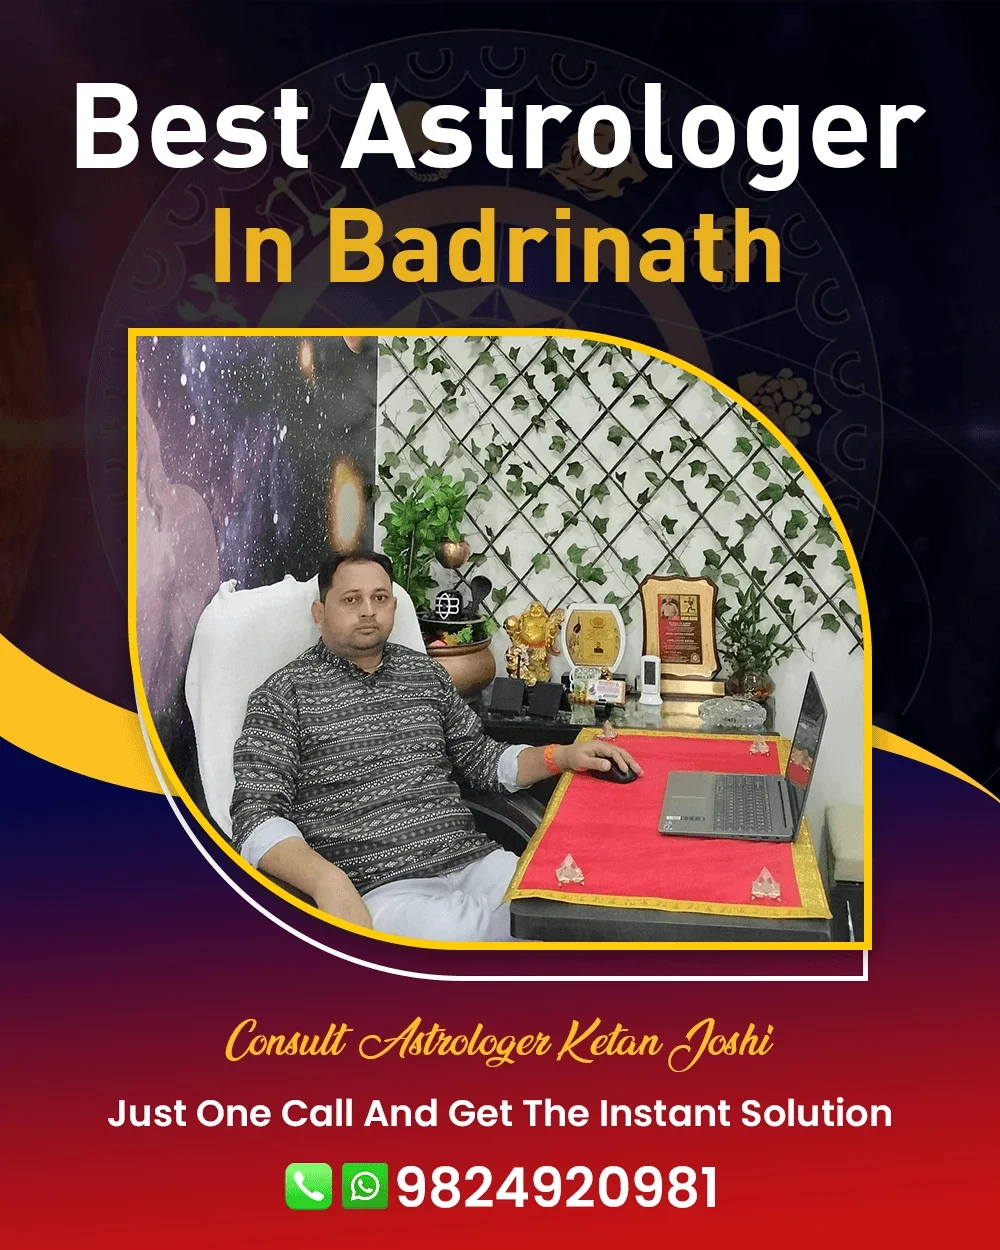 Best Astrologer In Badrinath